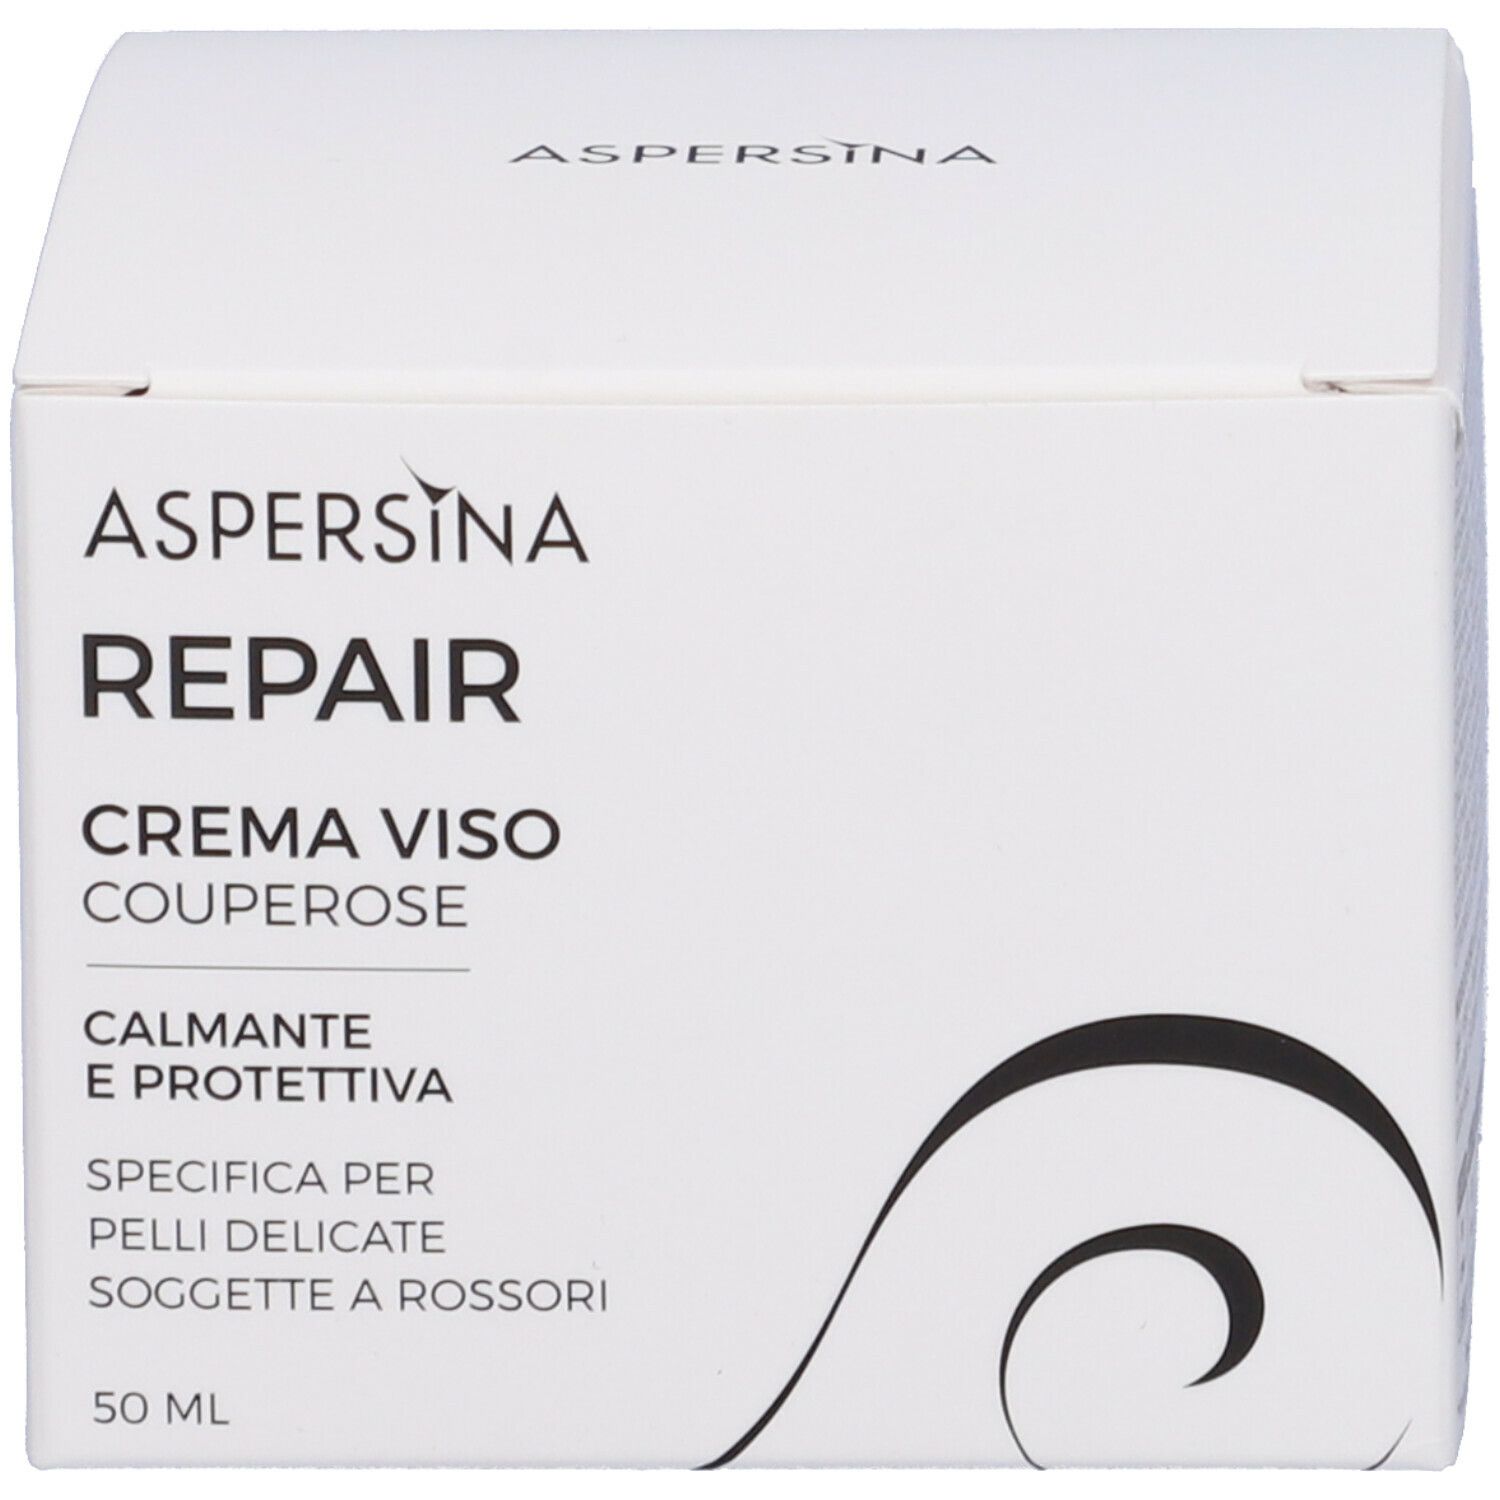 Aspersina Repair Crema Viso Couperose